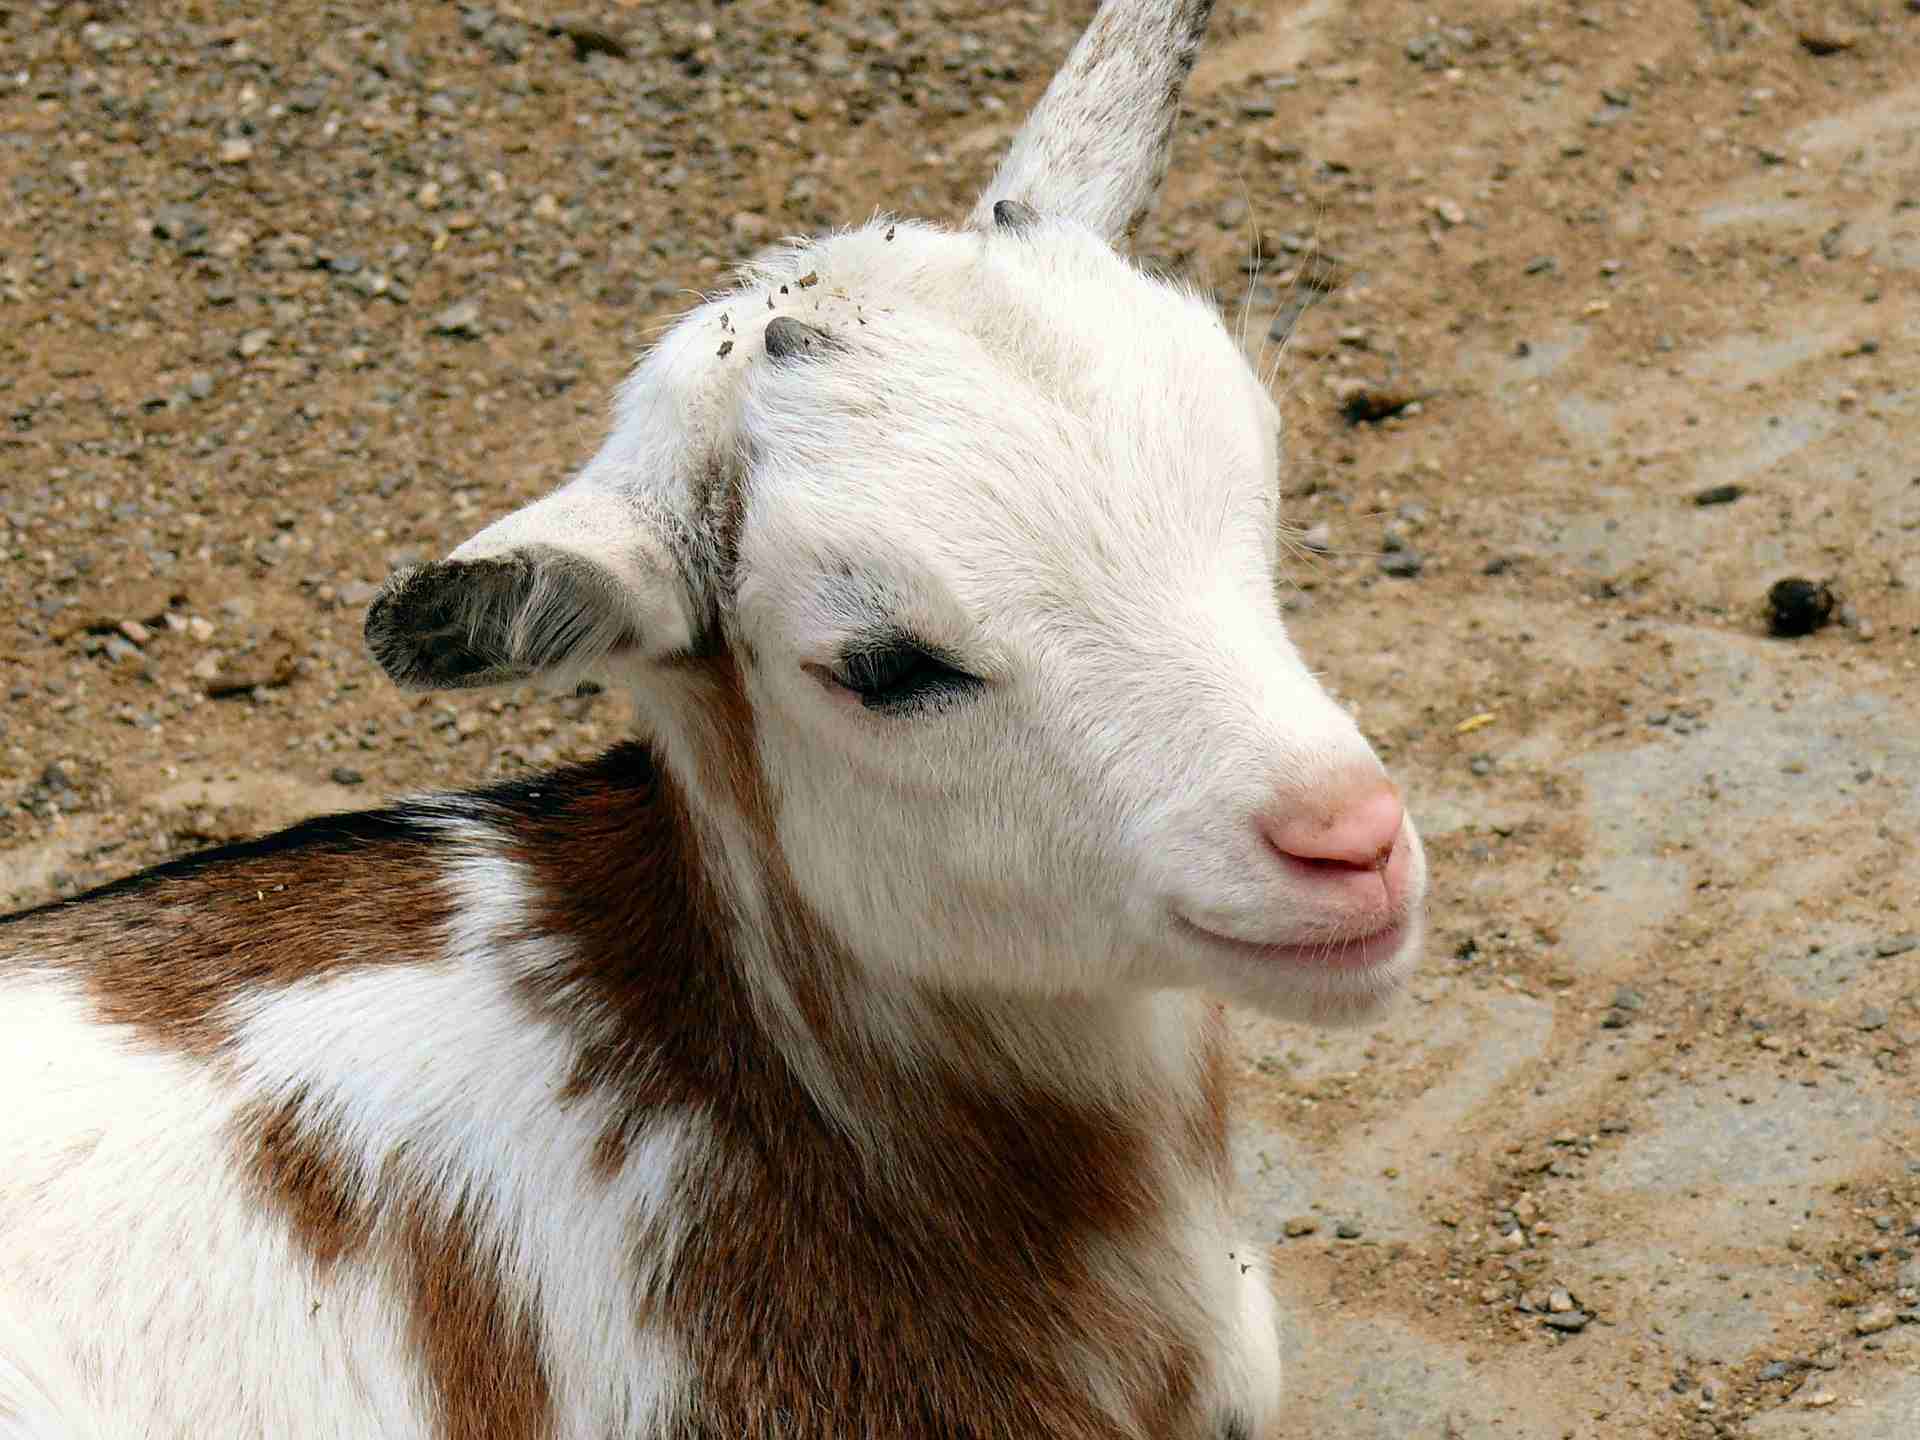 Baby goat